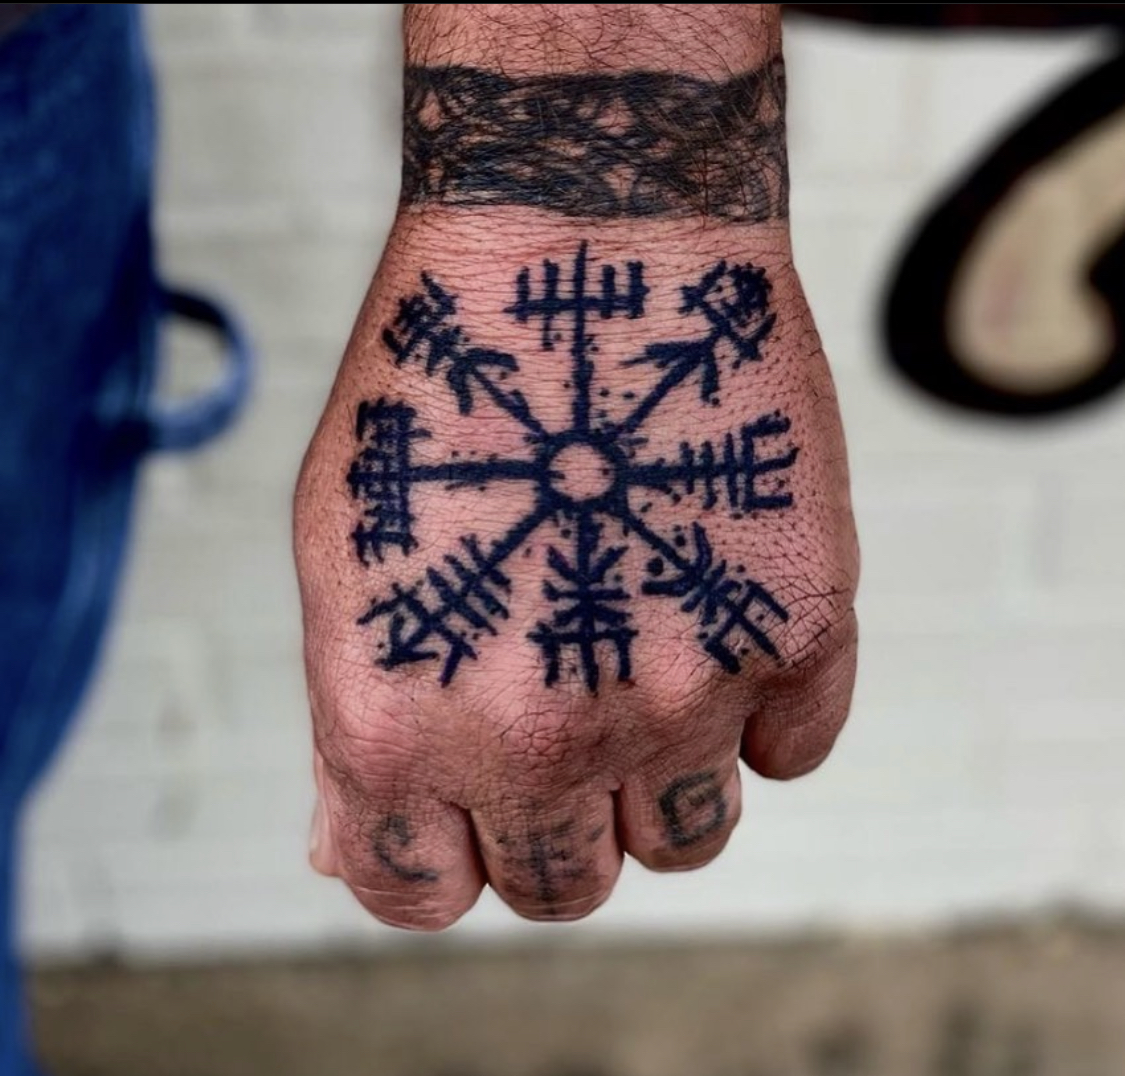 Hand tattoo from top Dallas tattoo artist